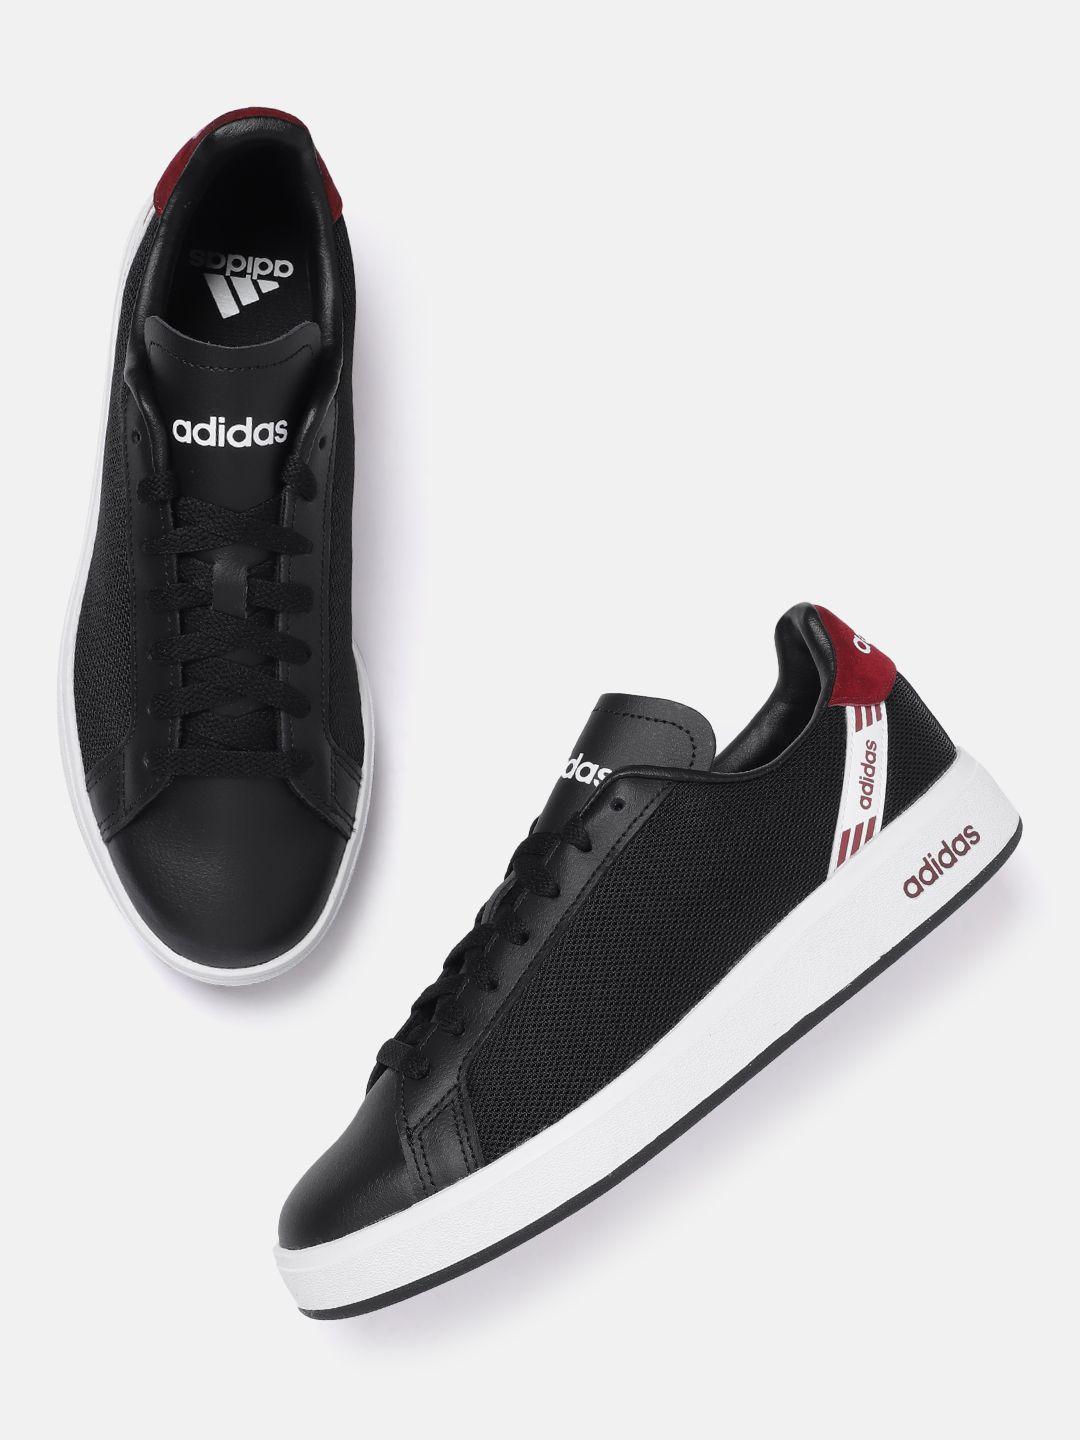 adidas-men-woven-design-grand-court-3.0-nxt-tennis-shoes